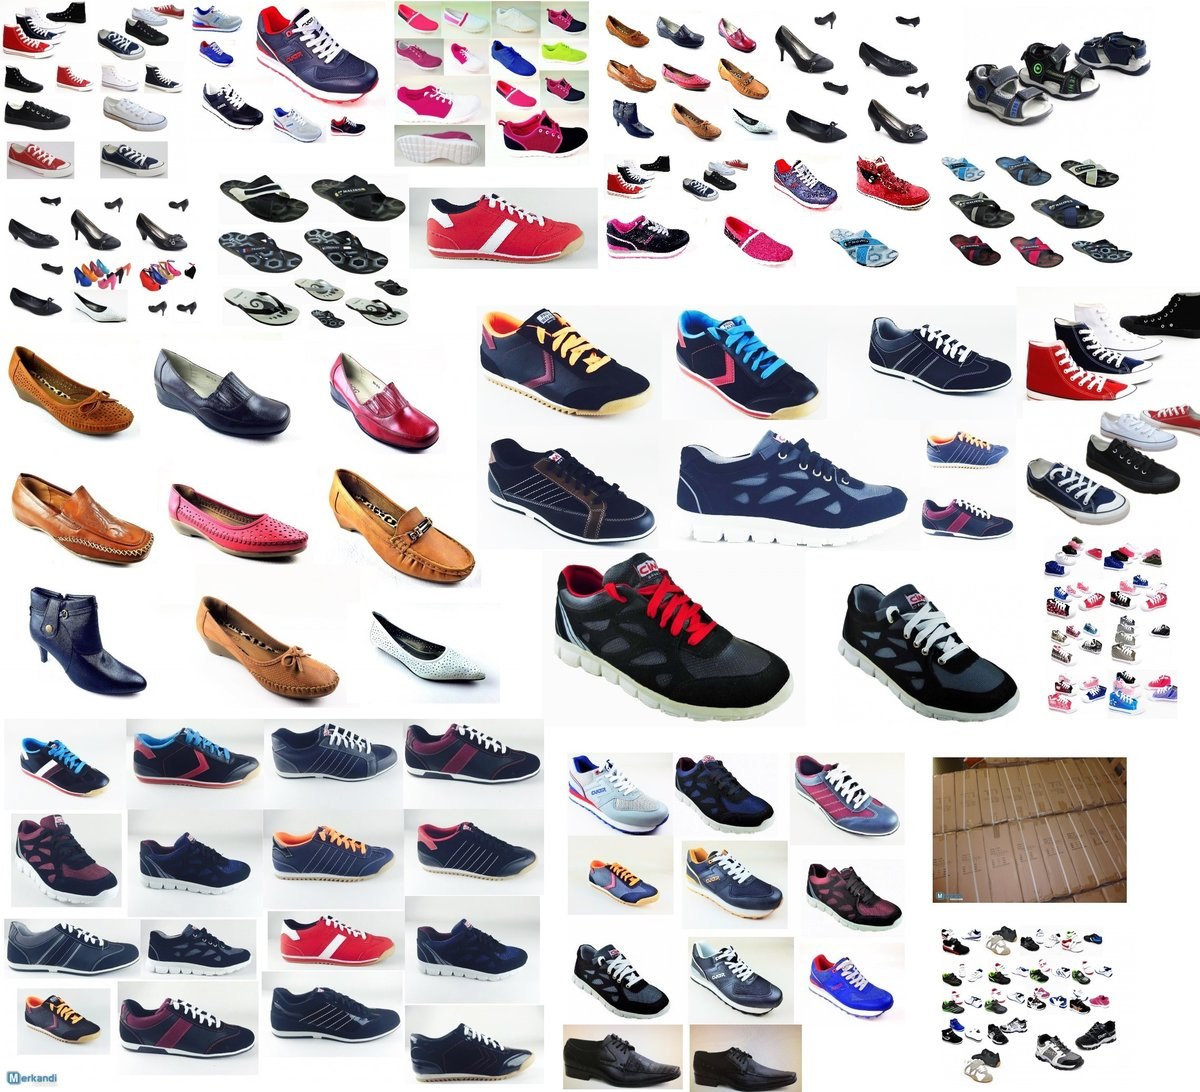 Мегатоп обувь кроссовки. Разная обувь. Модель сети. Одежда, обувь.. Интернет магазин обуви из Америки с доставкой в Россию. Страна одежда и обувь.